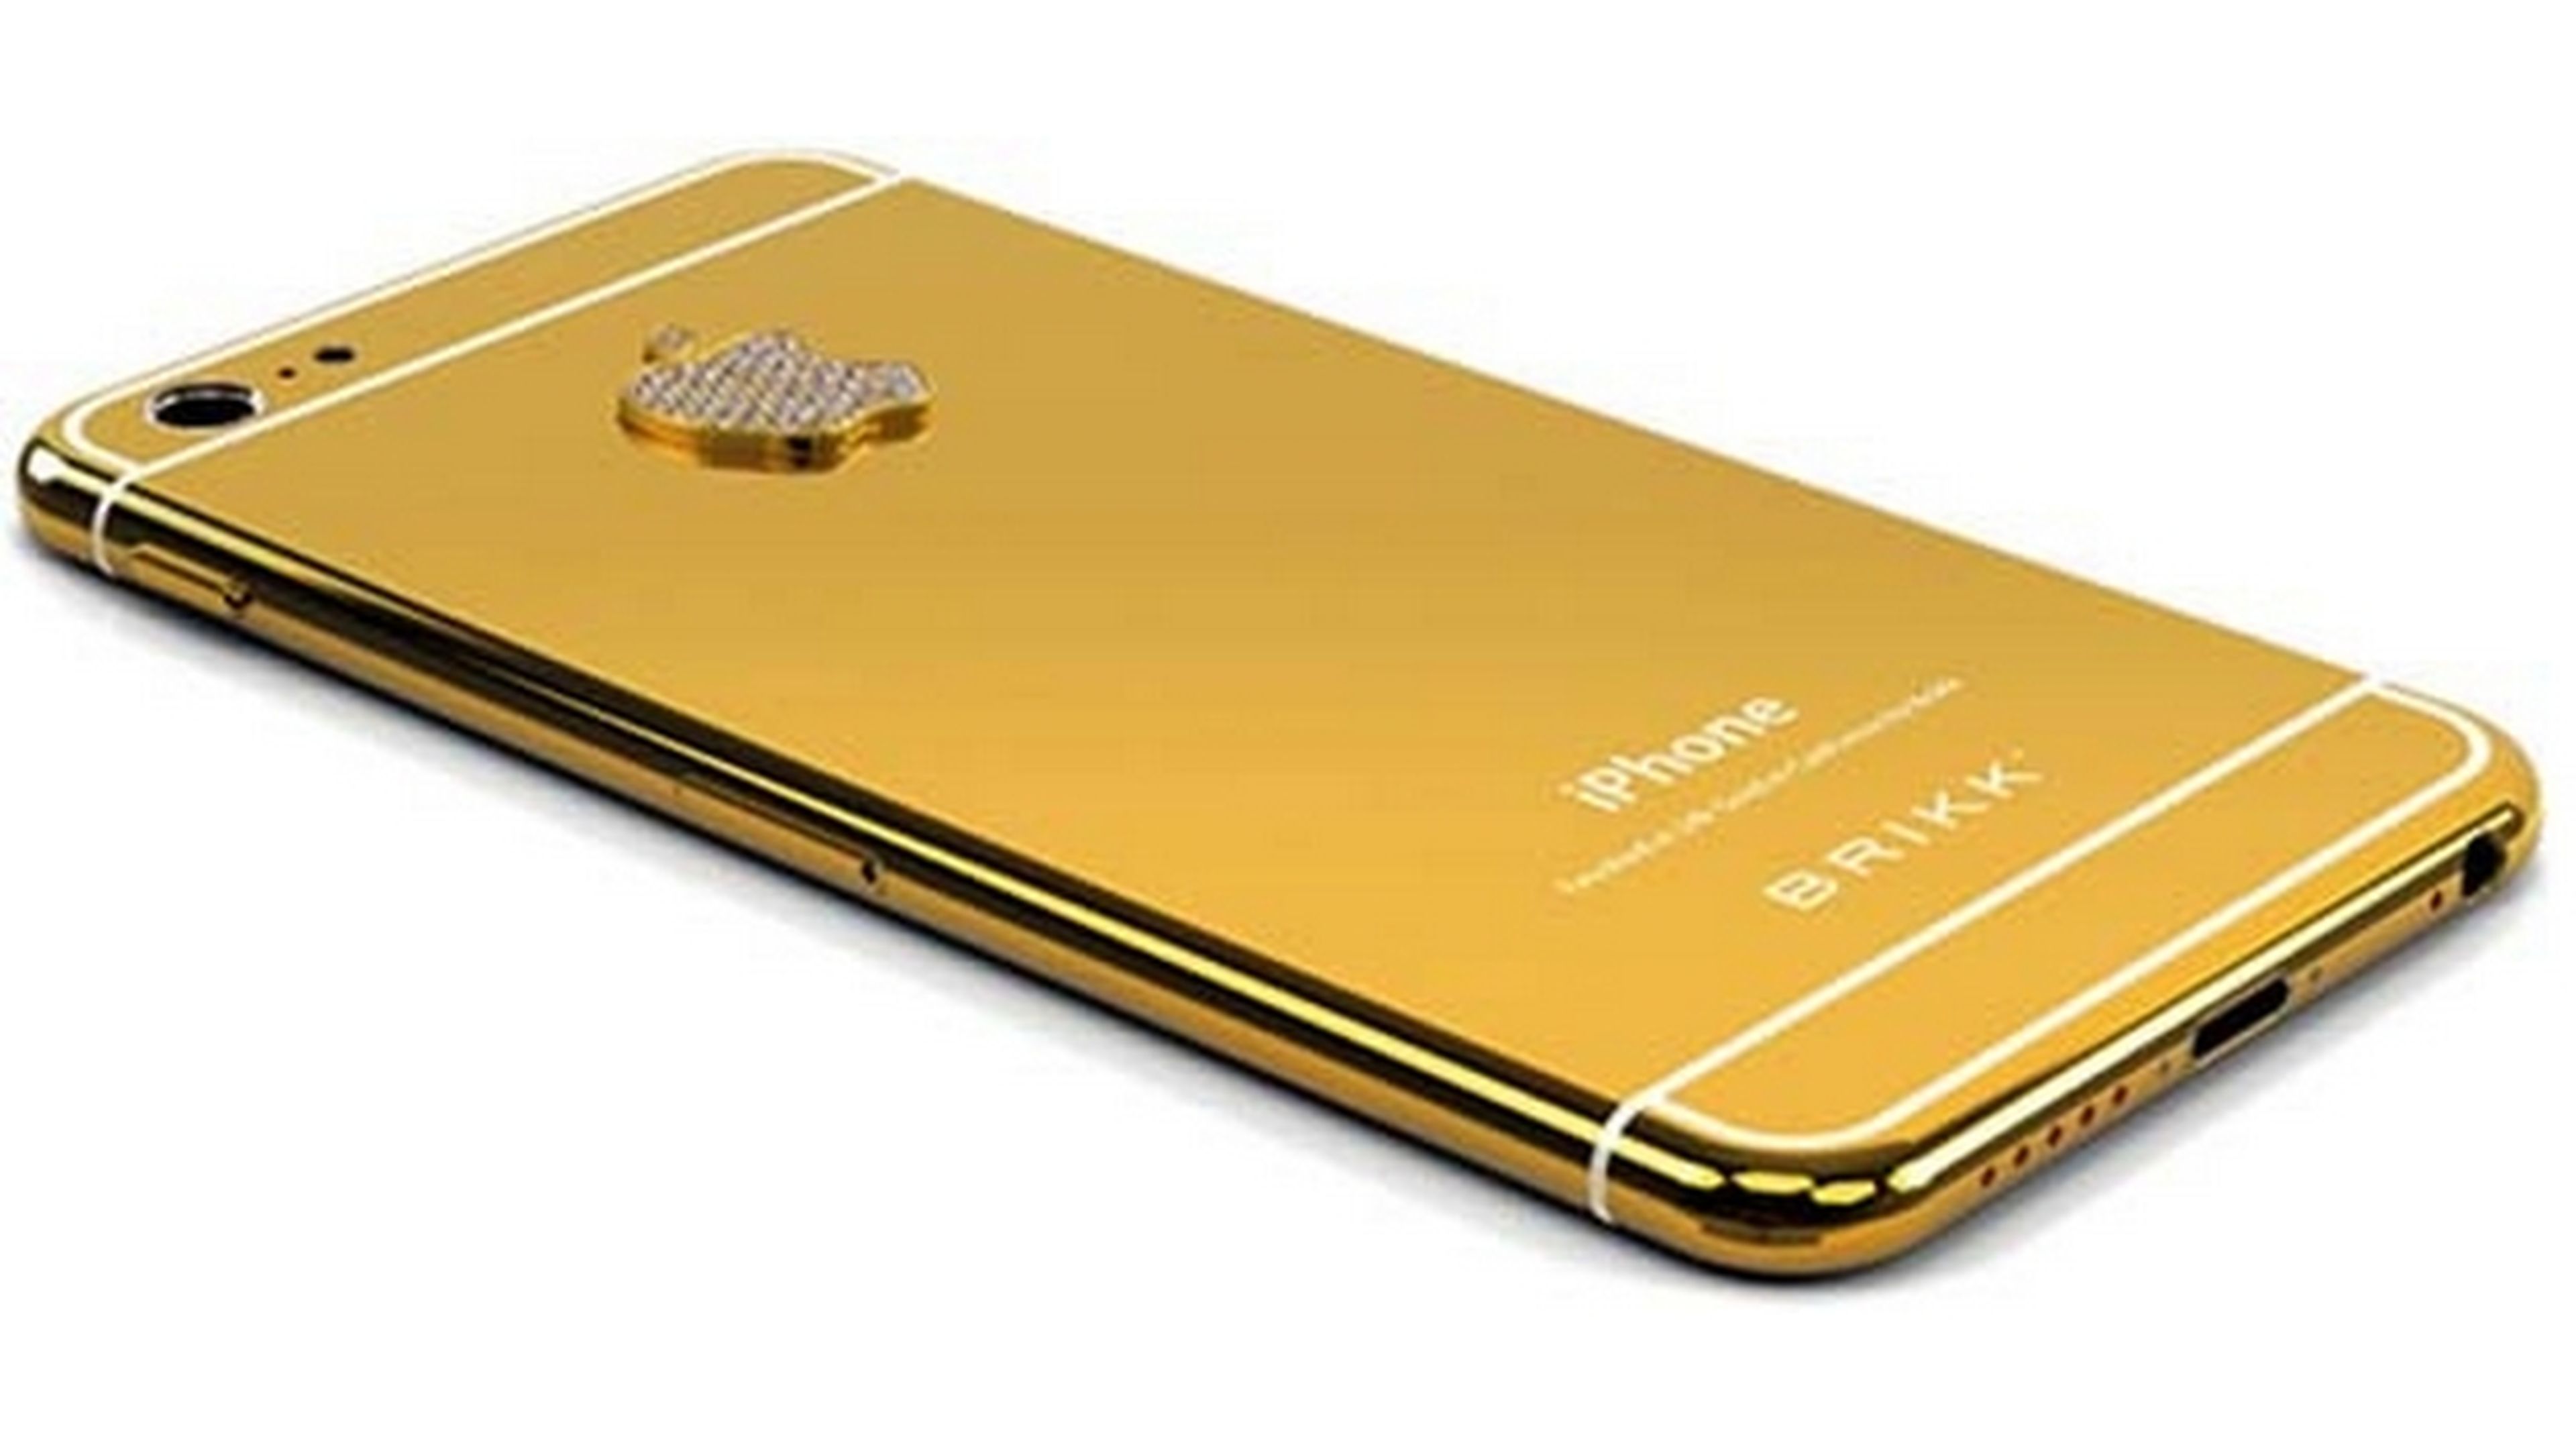 La joyería Brikk anuncia su Lux iPhone 6 con carcasa de oro de 24 kilates, platino y diamantes.